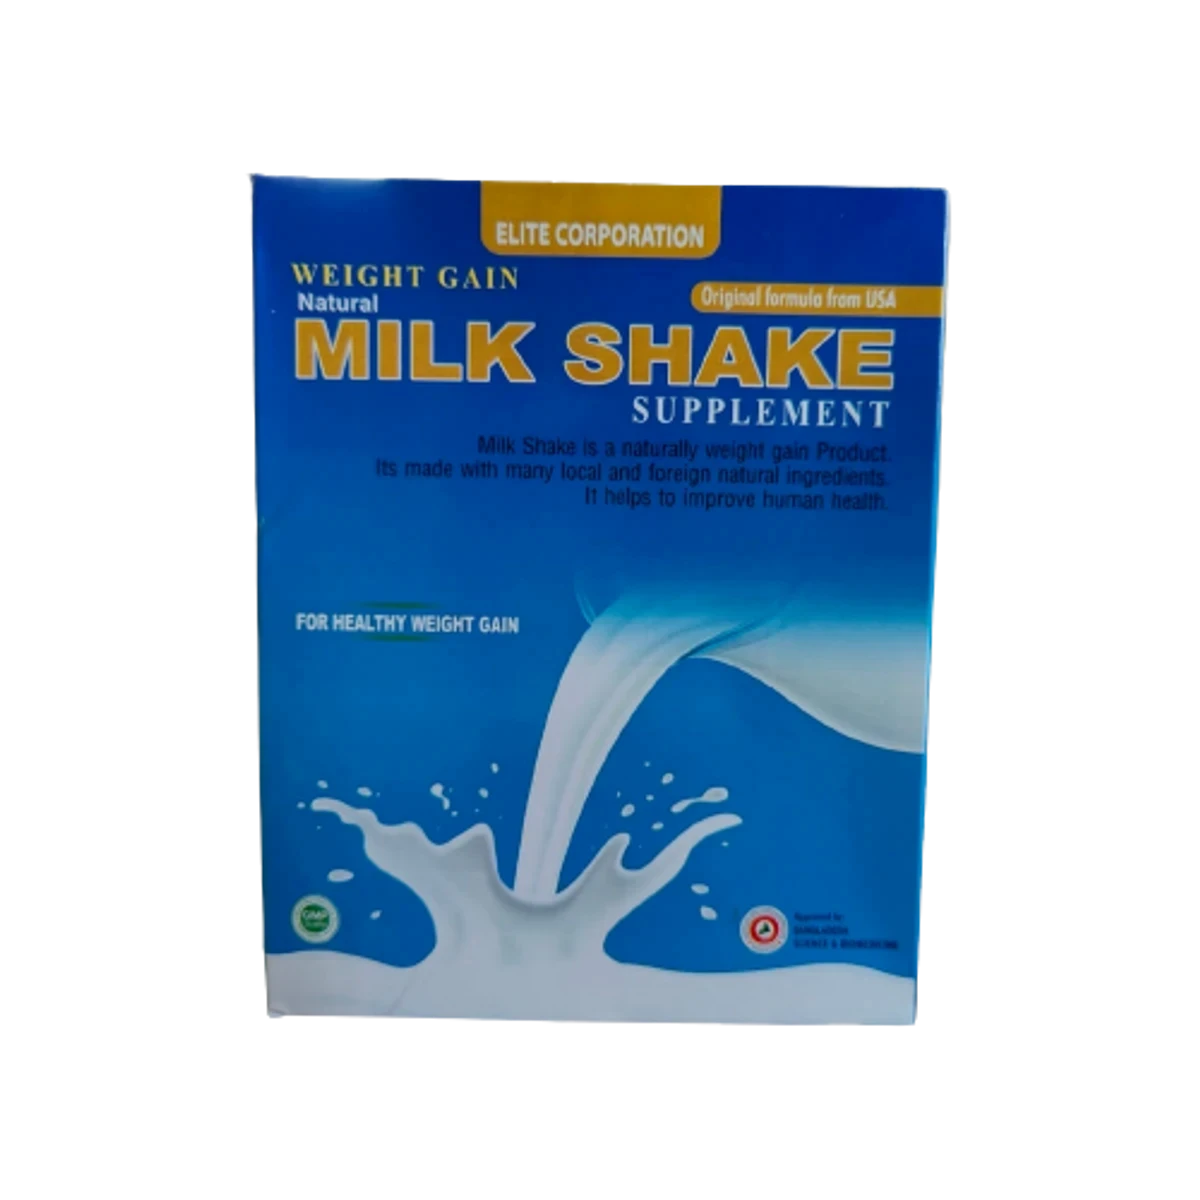 Natural Weight Gain Milk Shake